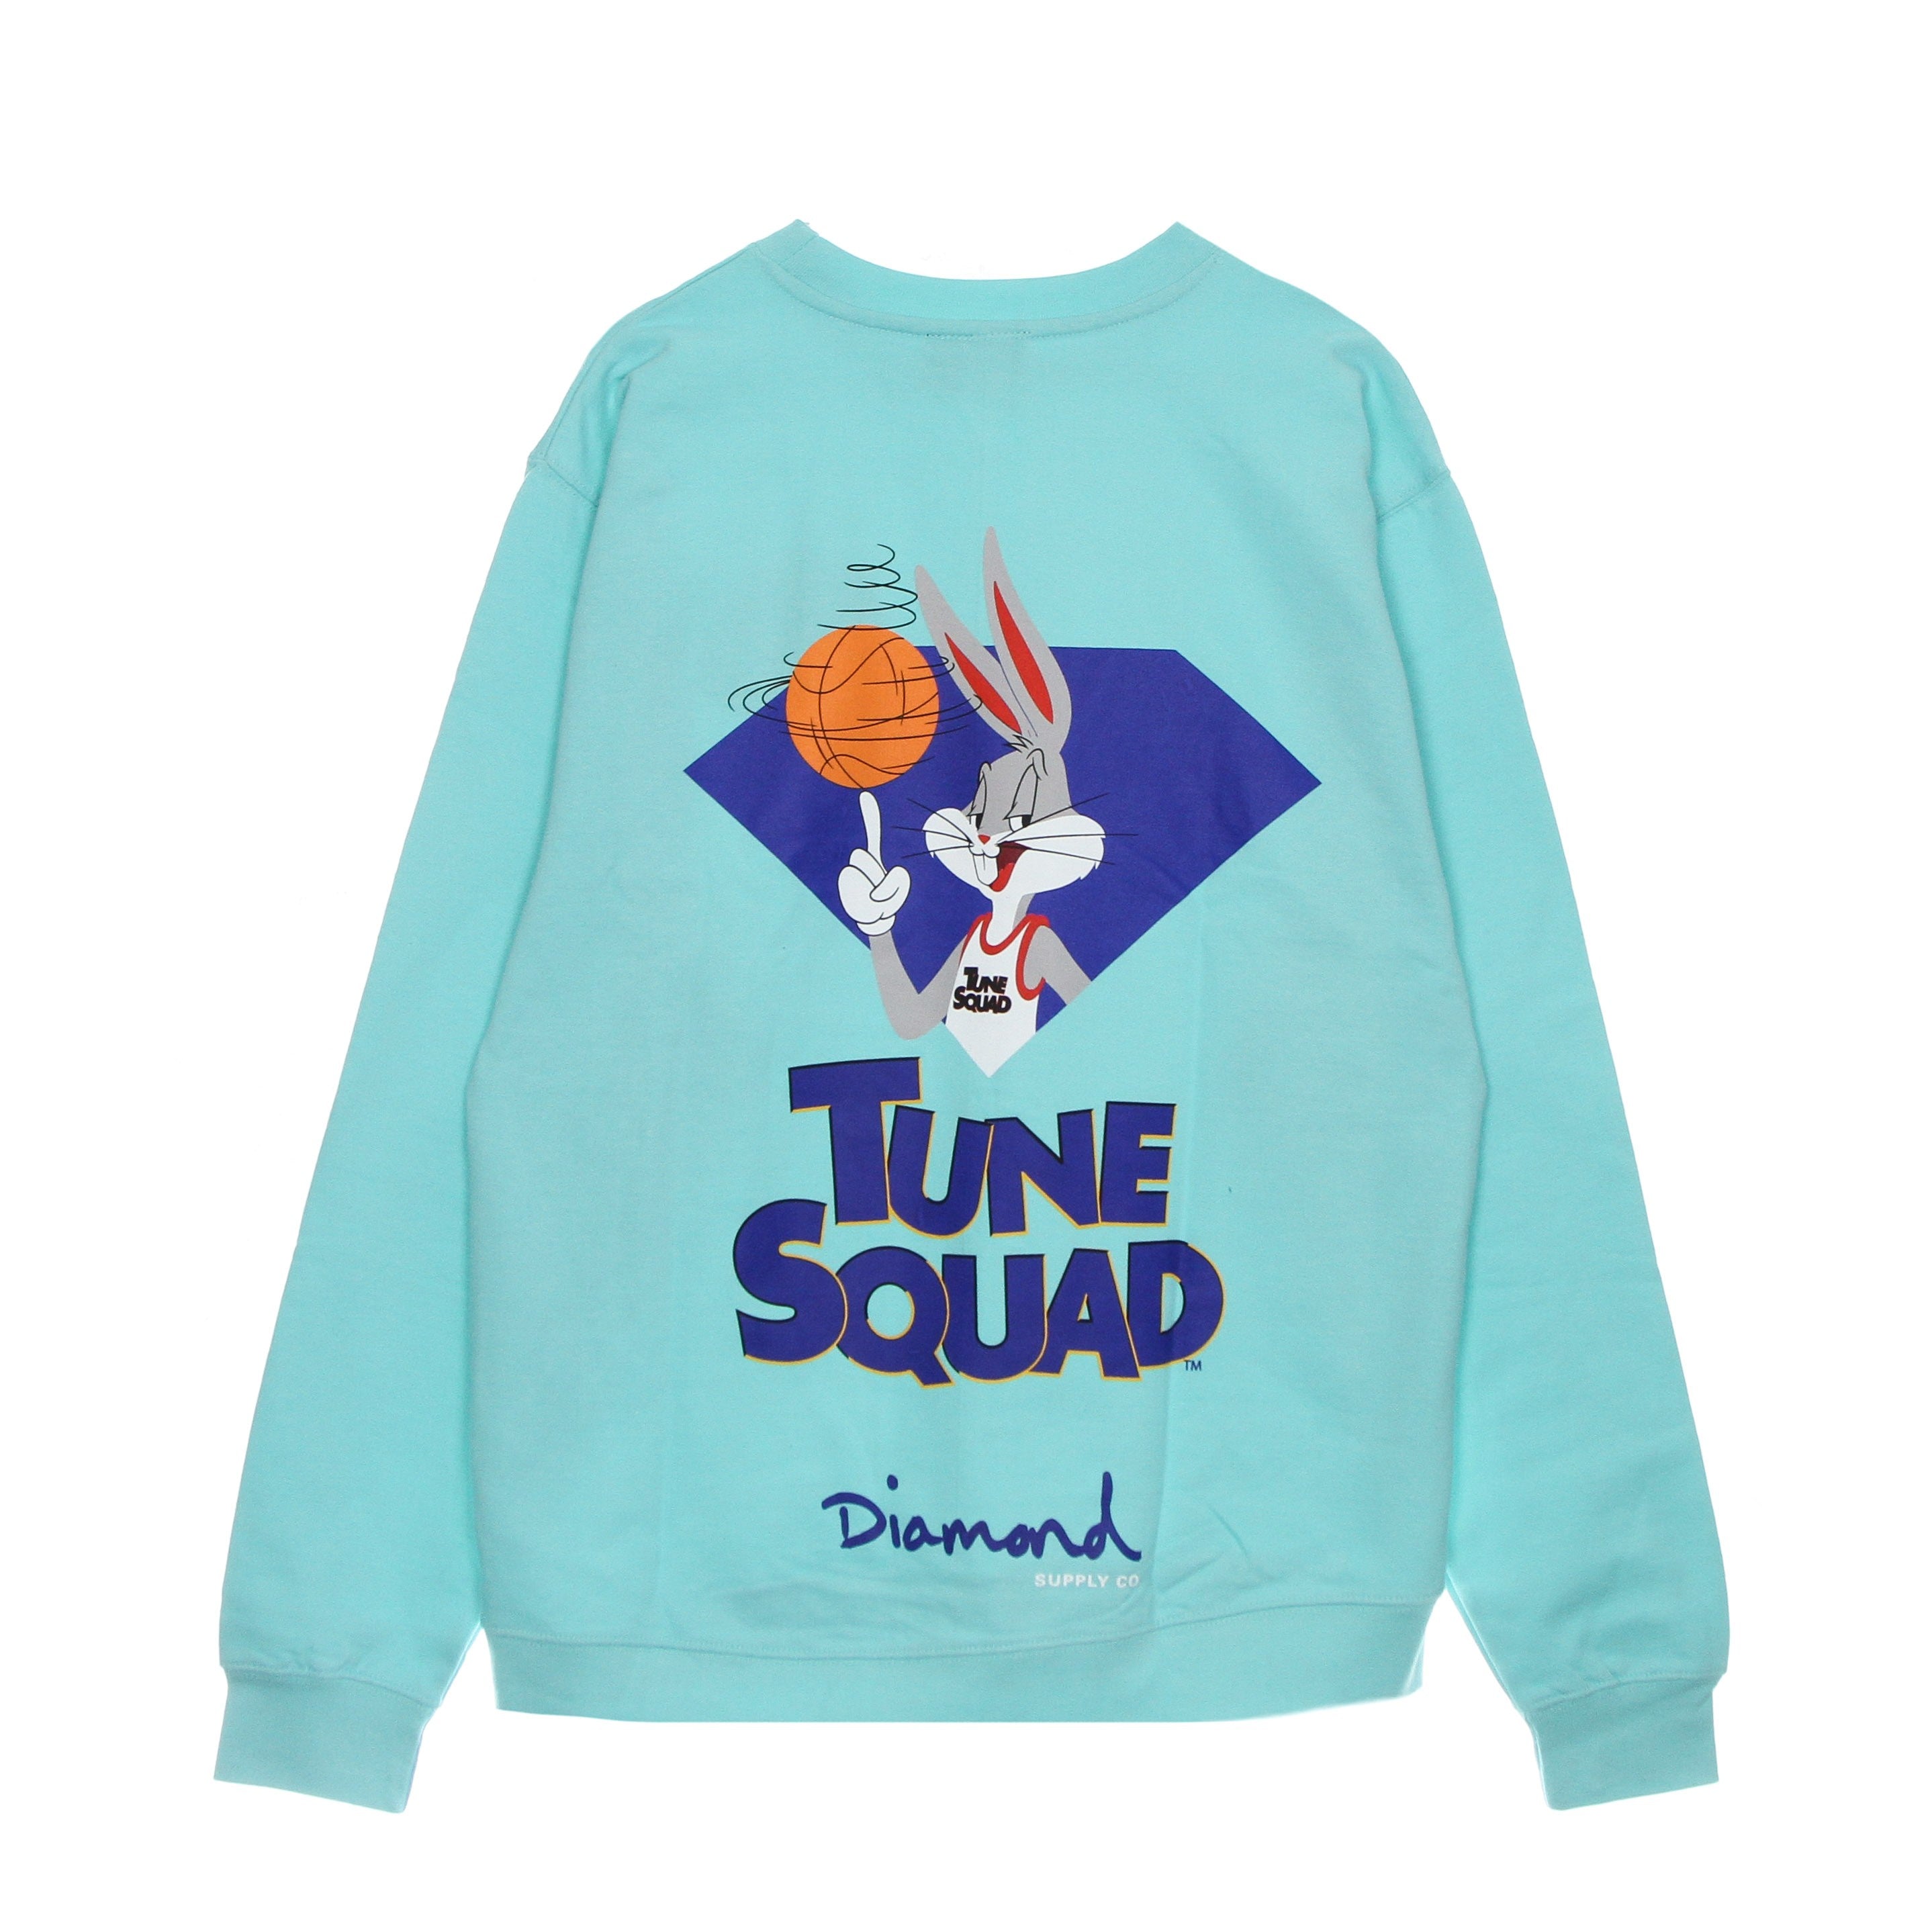 Bugs Bunny Crew X Space Jam 2 Men's Crewneck Sweatshirt